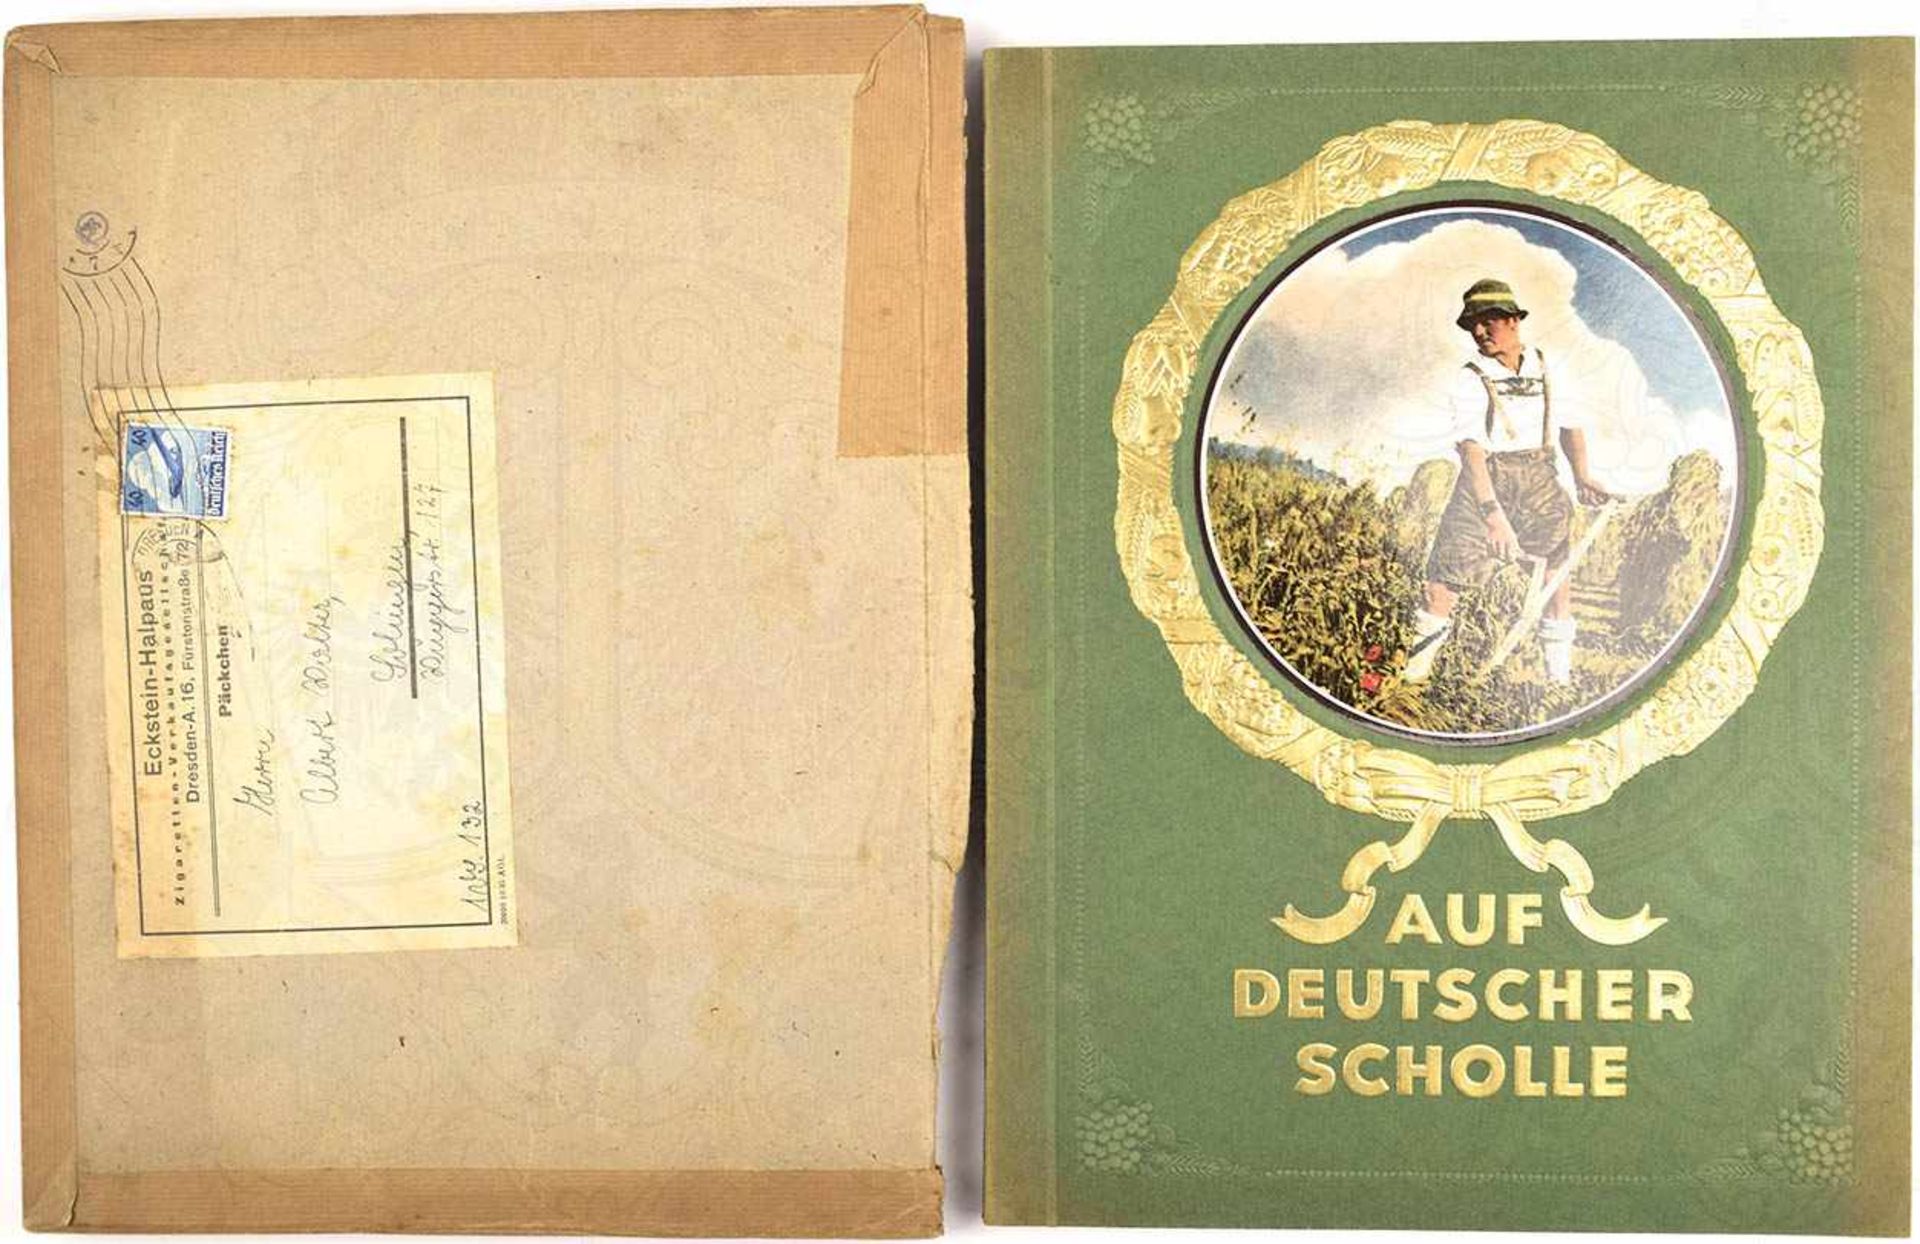 AUF DEUTSCHER SCHOLLE, 1935, farbige Bilder nach Fotos, kpl., goldgepr. kart., im orig.